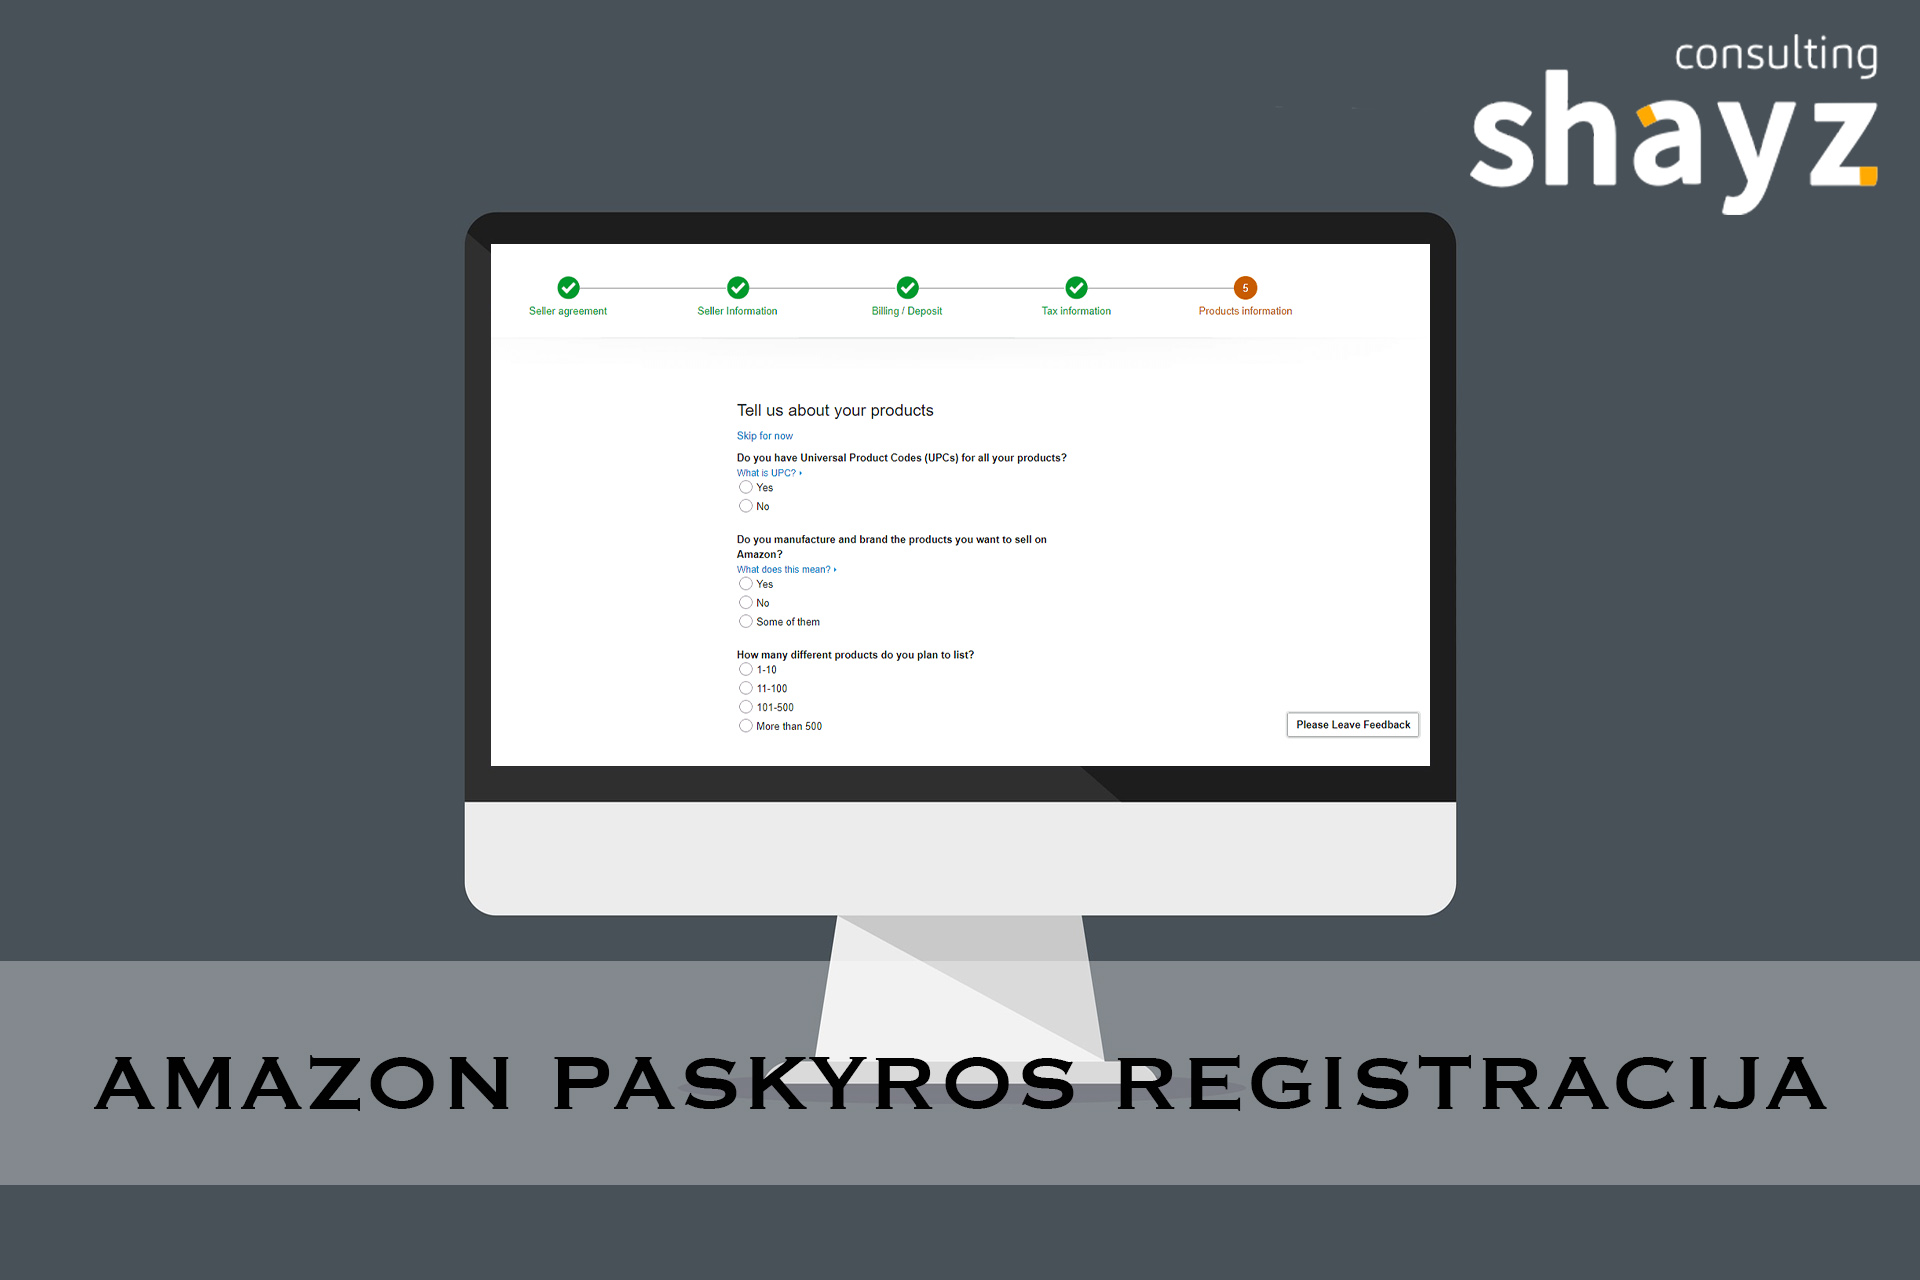  Amazon Paskyros Registracija